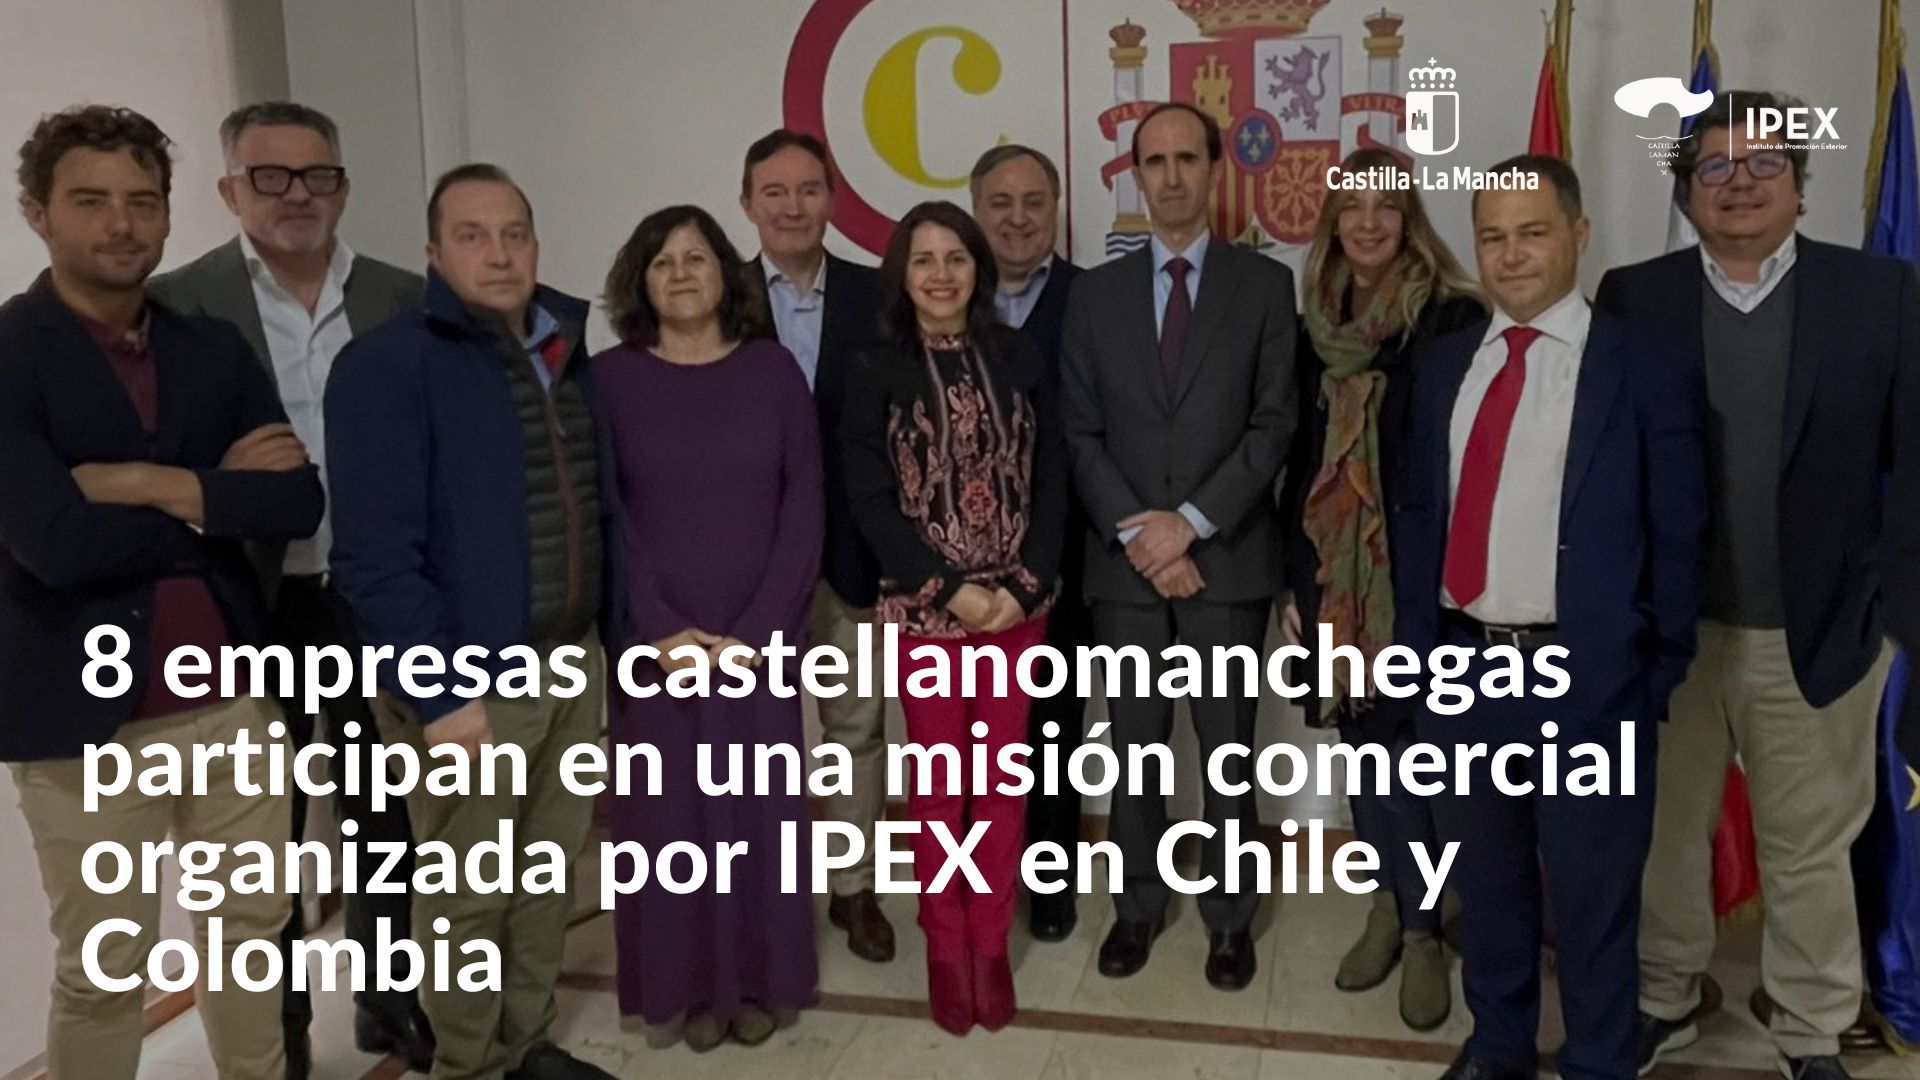 8 empresas castellano-manchegas participan en una misión comercial organizada por IPEX en Chile y Colombia